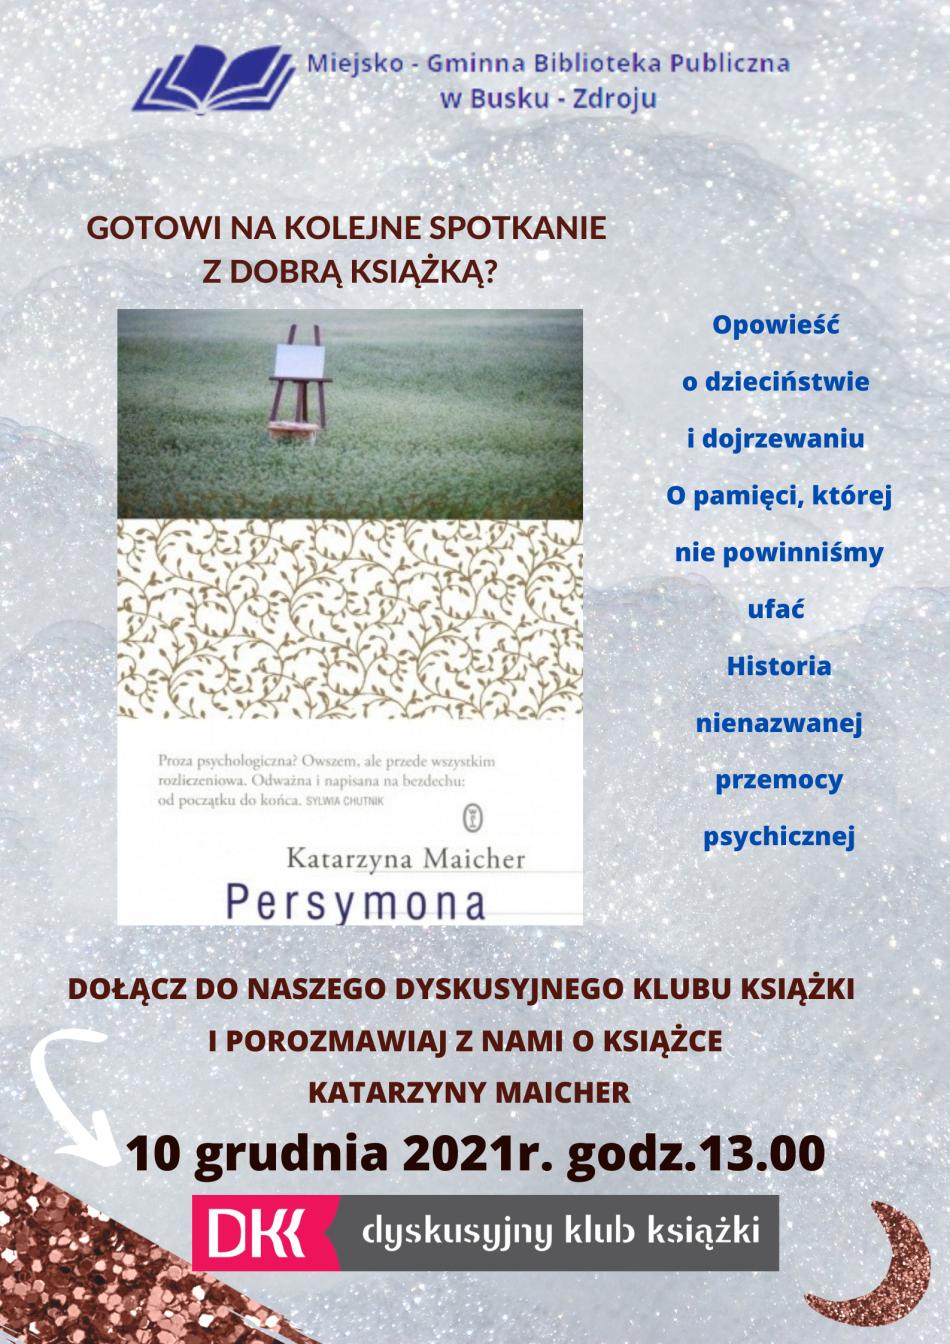 Zdjęcie obrazuje plakat przedstawiający okładkę książki PERSYMONA autorstwa Katarzyny Maicher oraz zawiera zaproszenie do Dyskusyjnego Klubu Książki w Miejsko Gminnej Bibliotece Publicznej w Busku-Zdroju na dzień 10 grudnia na godz. 13.00